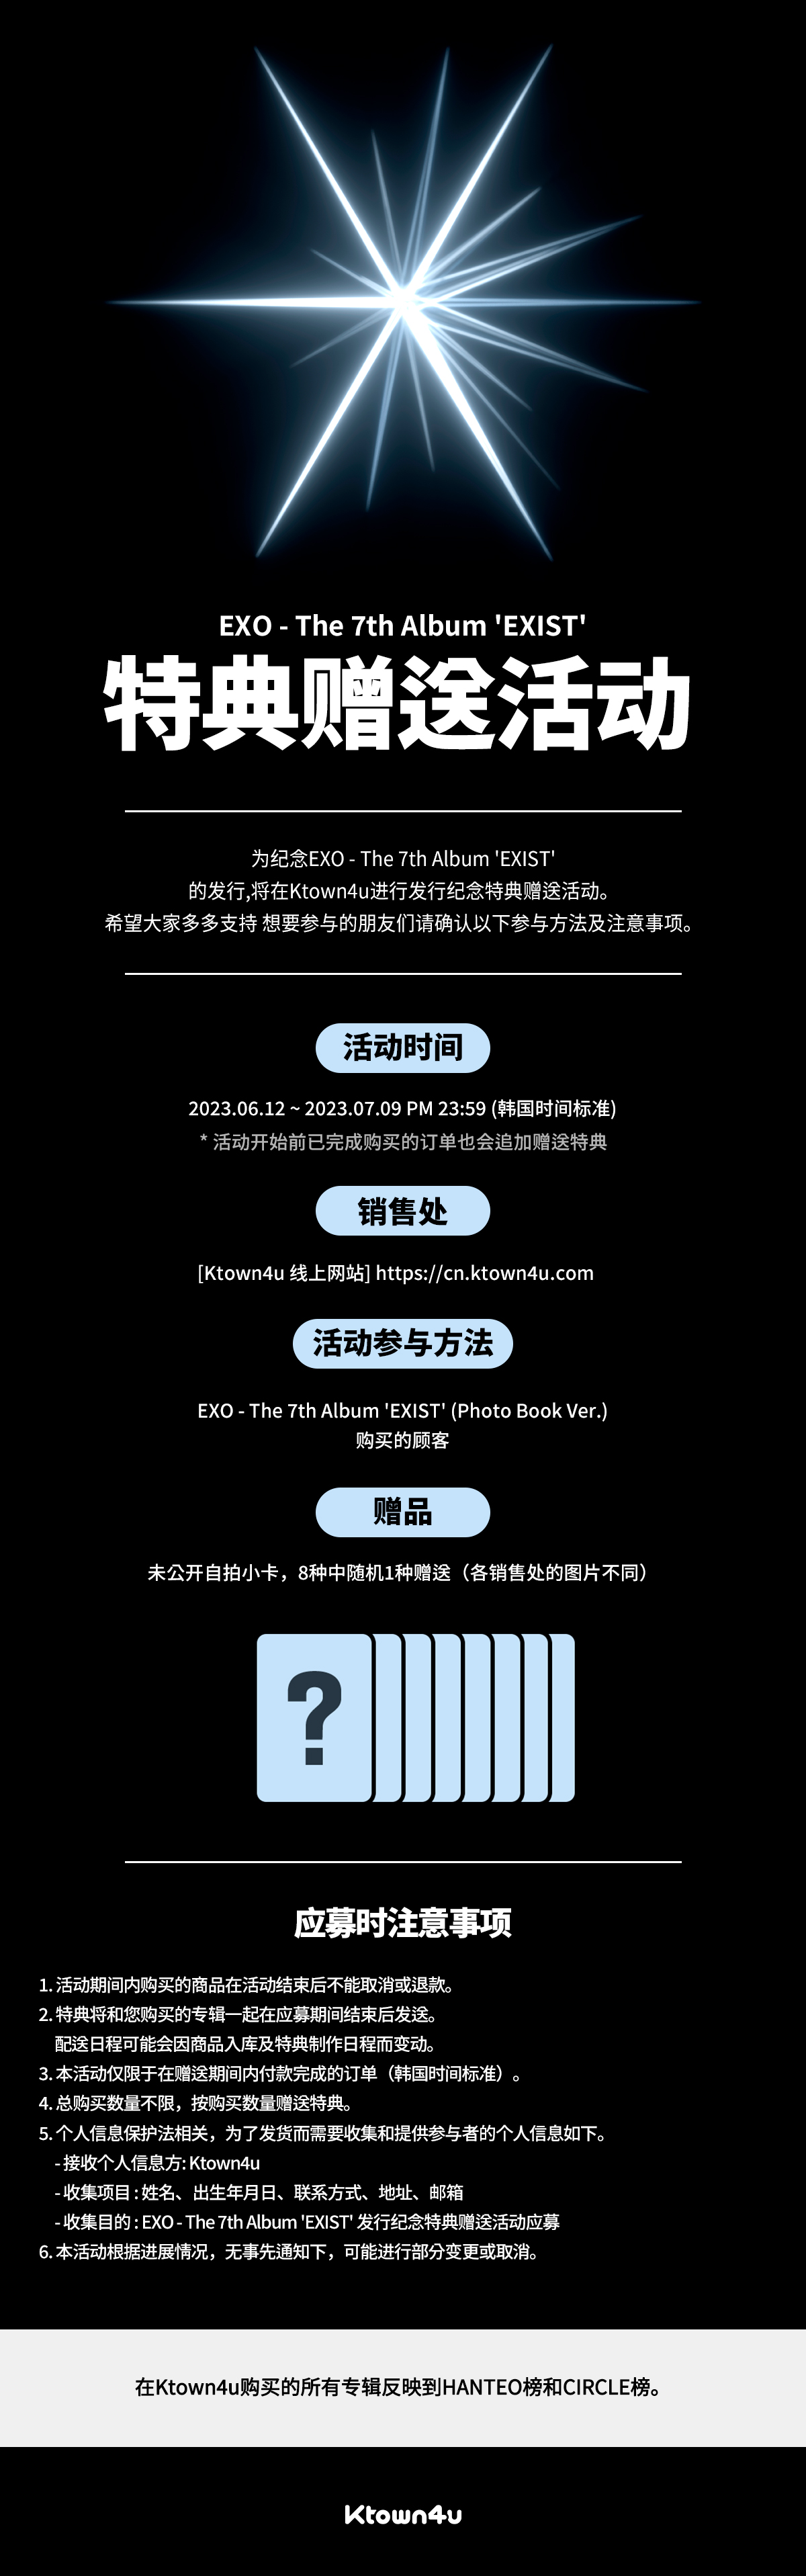 cn.ktown4u.com : event detail_EXO